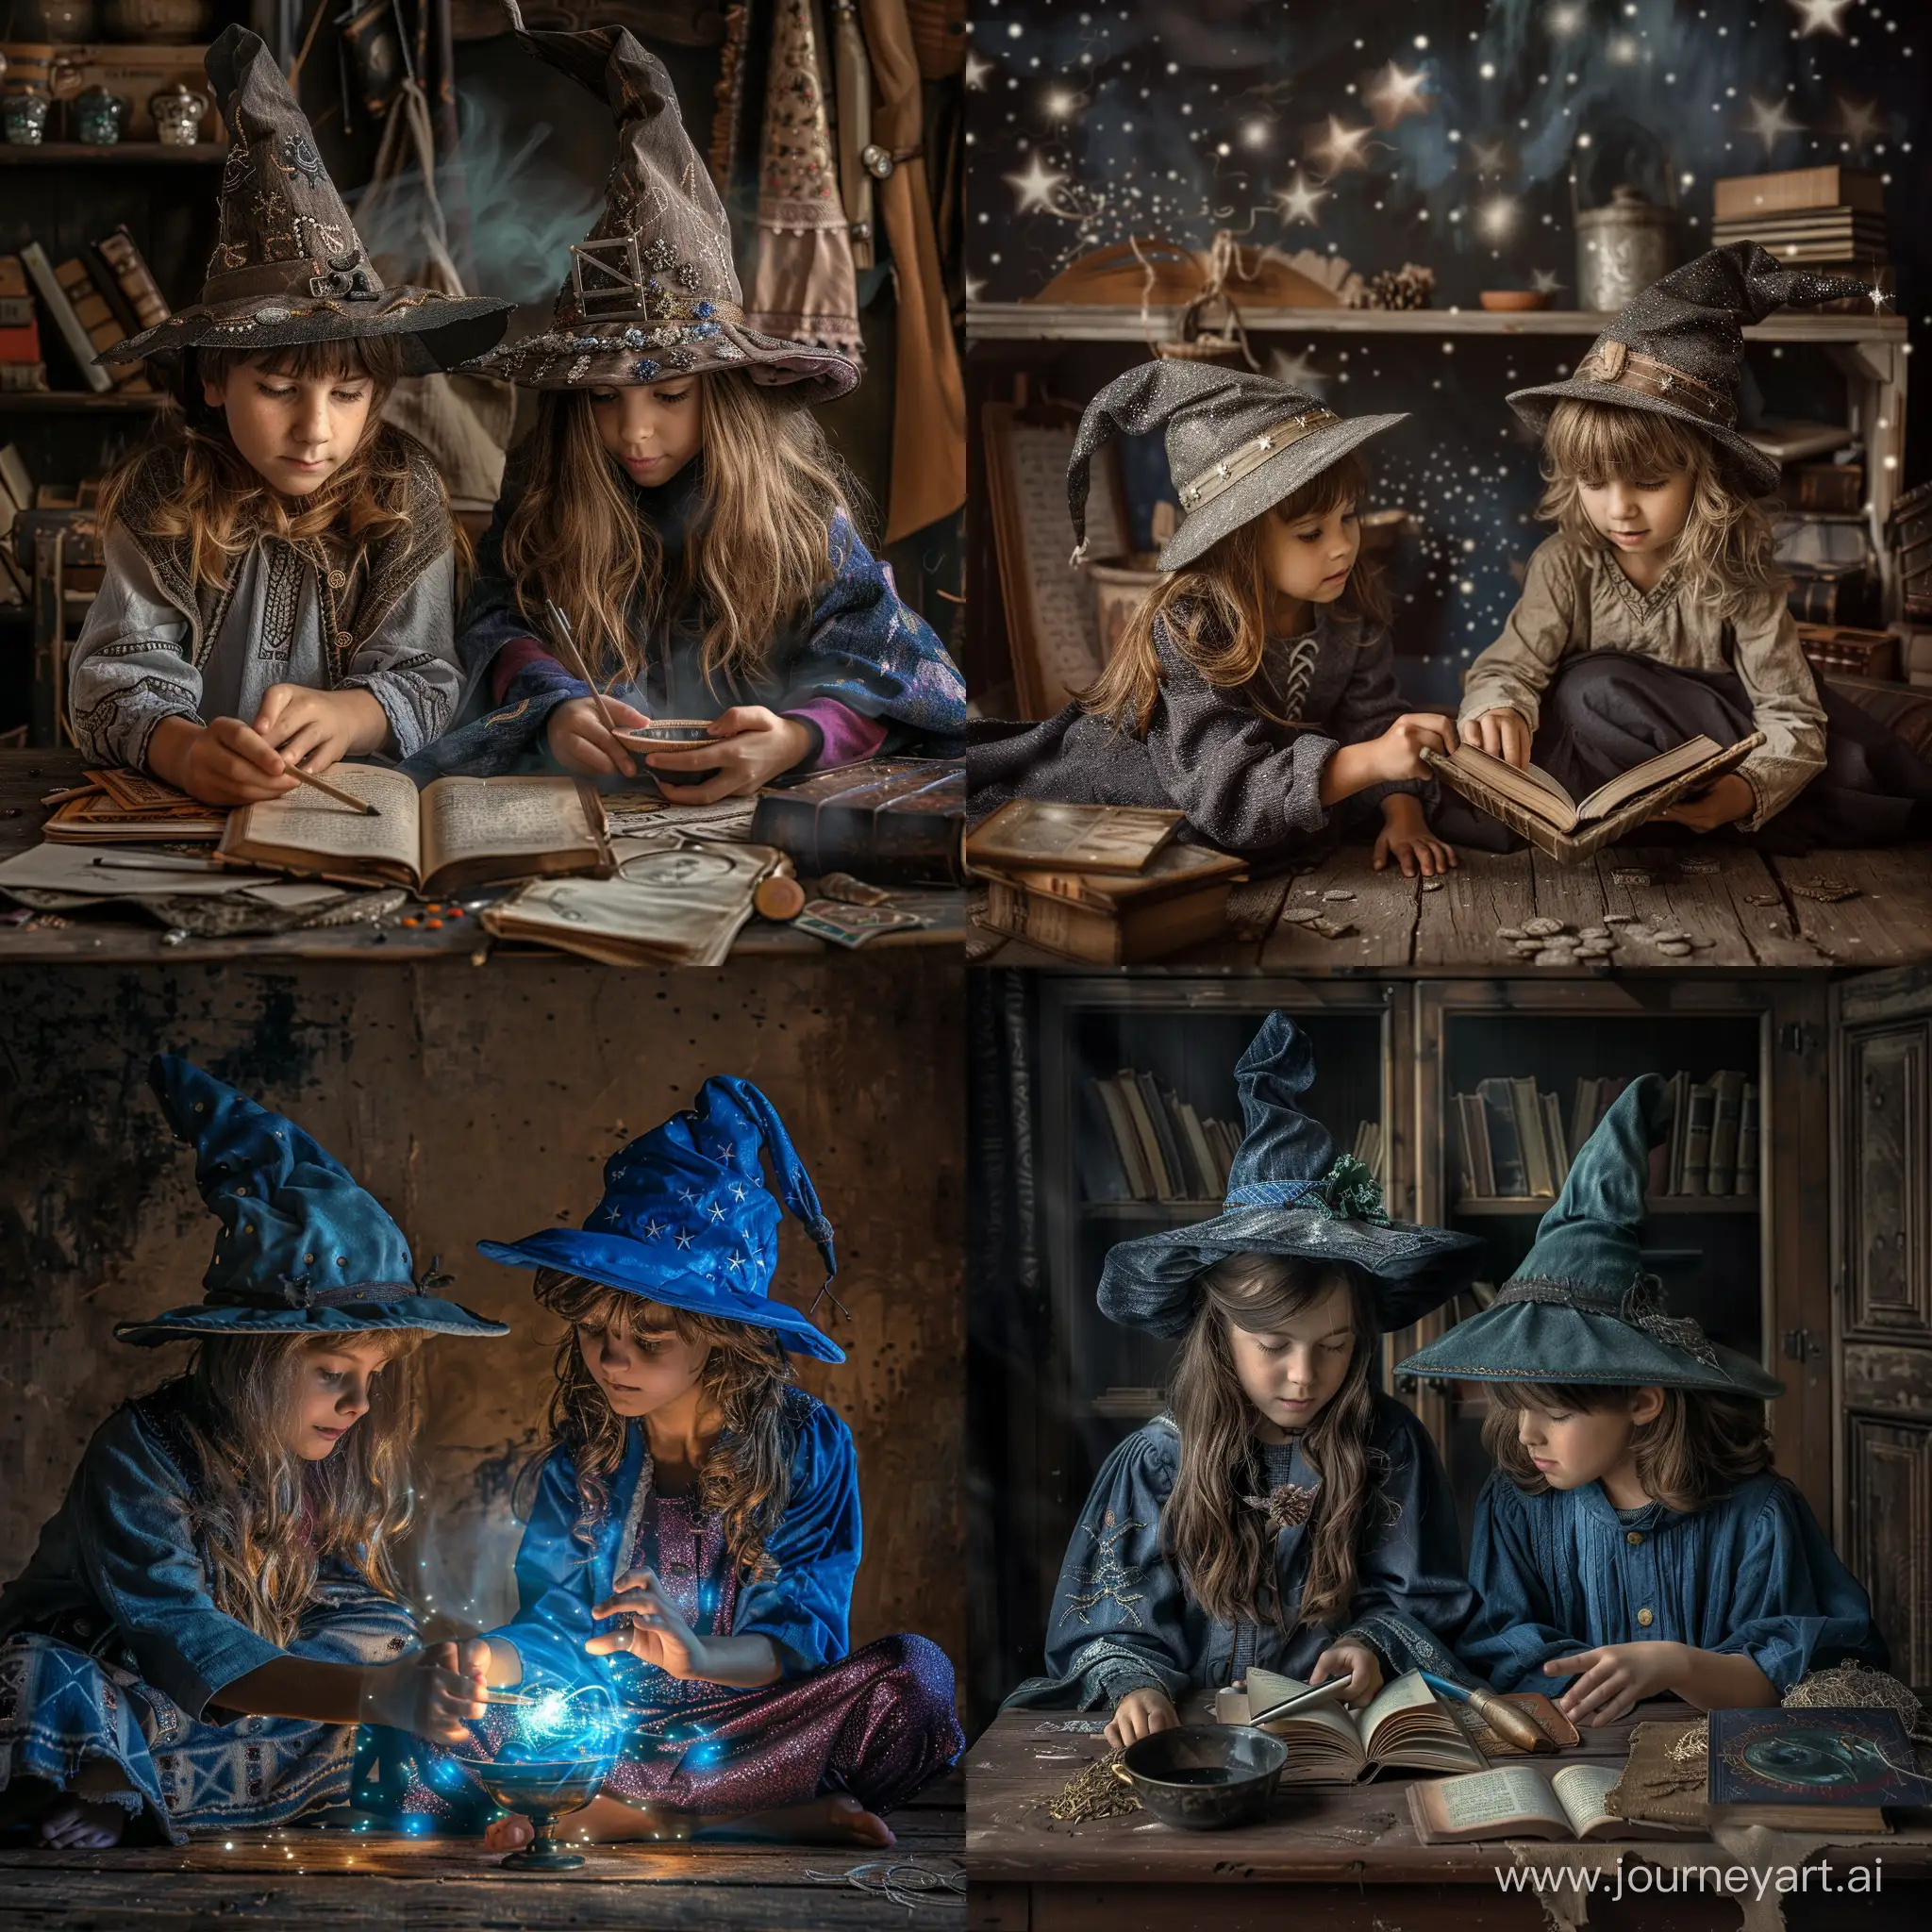 Мальчик и девочка играют в волшебников, фотография, гиперреализм, высокое разрешение